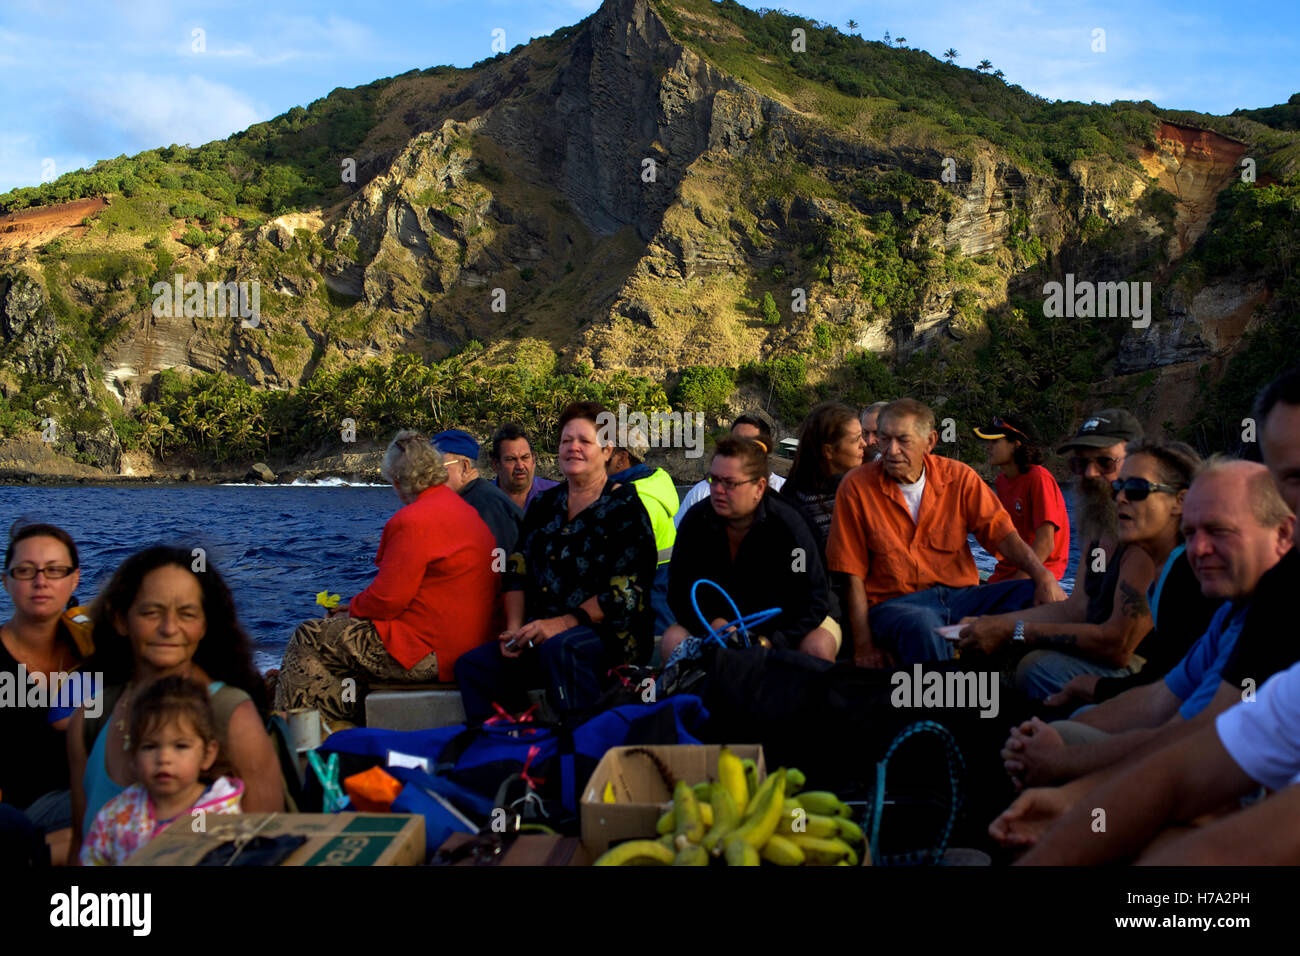 Pitcairn, Söhne von Meuterern! -03/06/2012 - Pitcairn / Pitcairn - Menschen, die Einschiffung auf die Claymore II verlassen Pitcairn Insel - Olivier Goujon / Le Pictorium Stockfoto